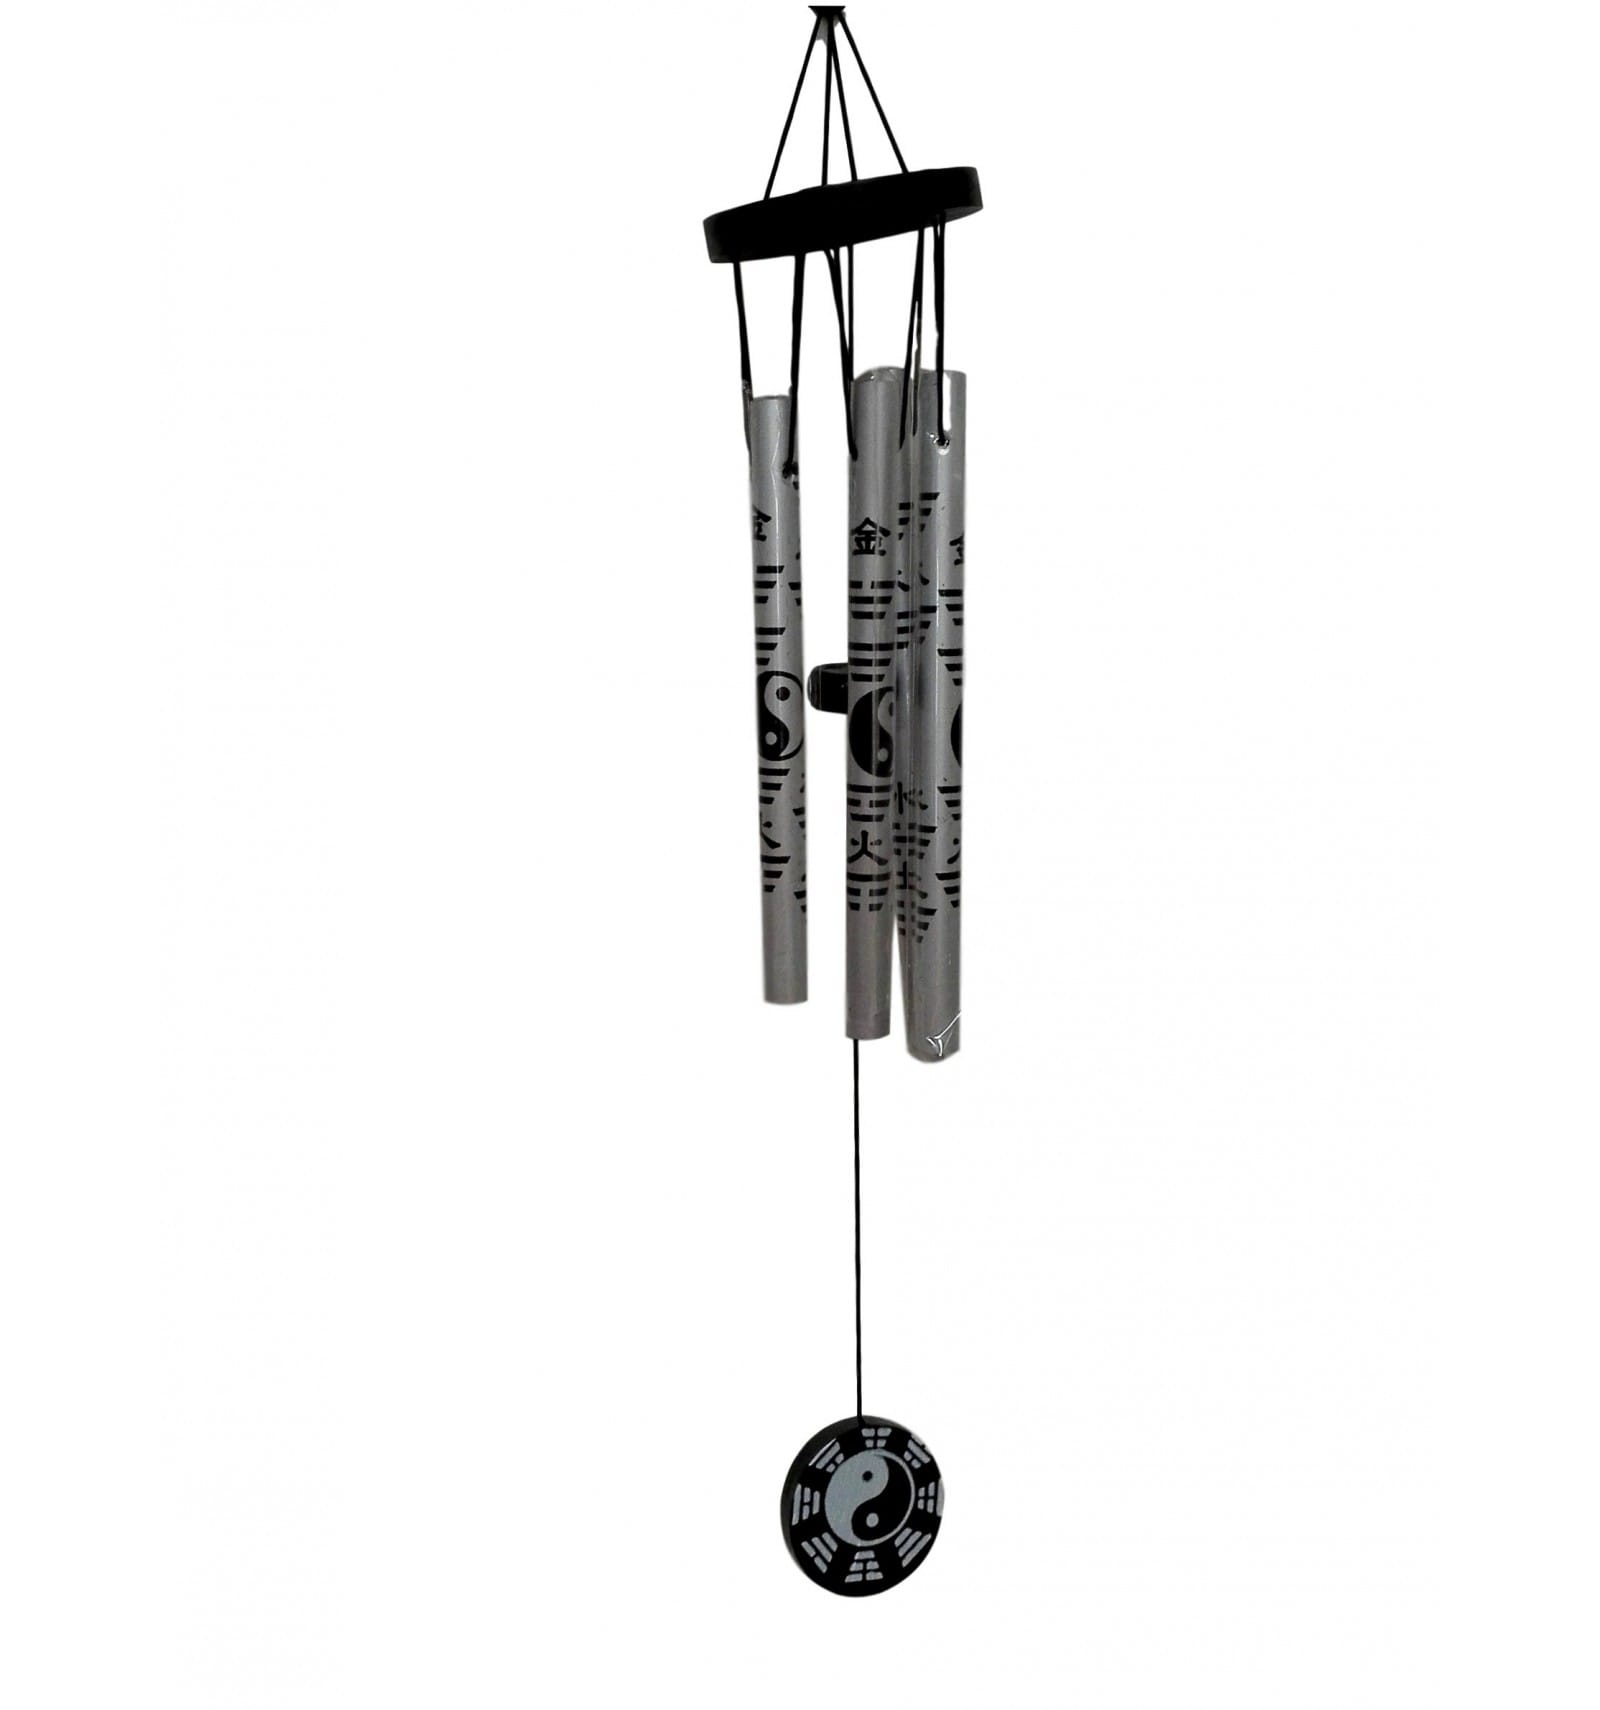 Carillon éolien feng shui, 5 tubes métalliques, équilibre et zénitude.